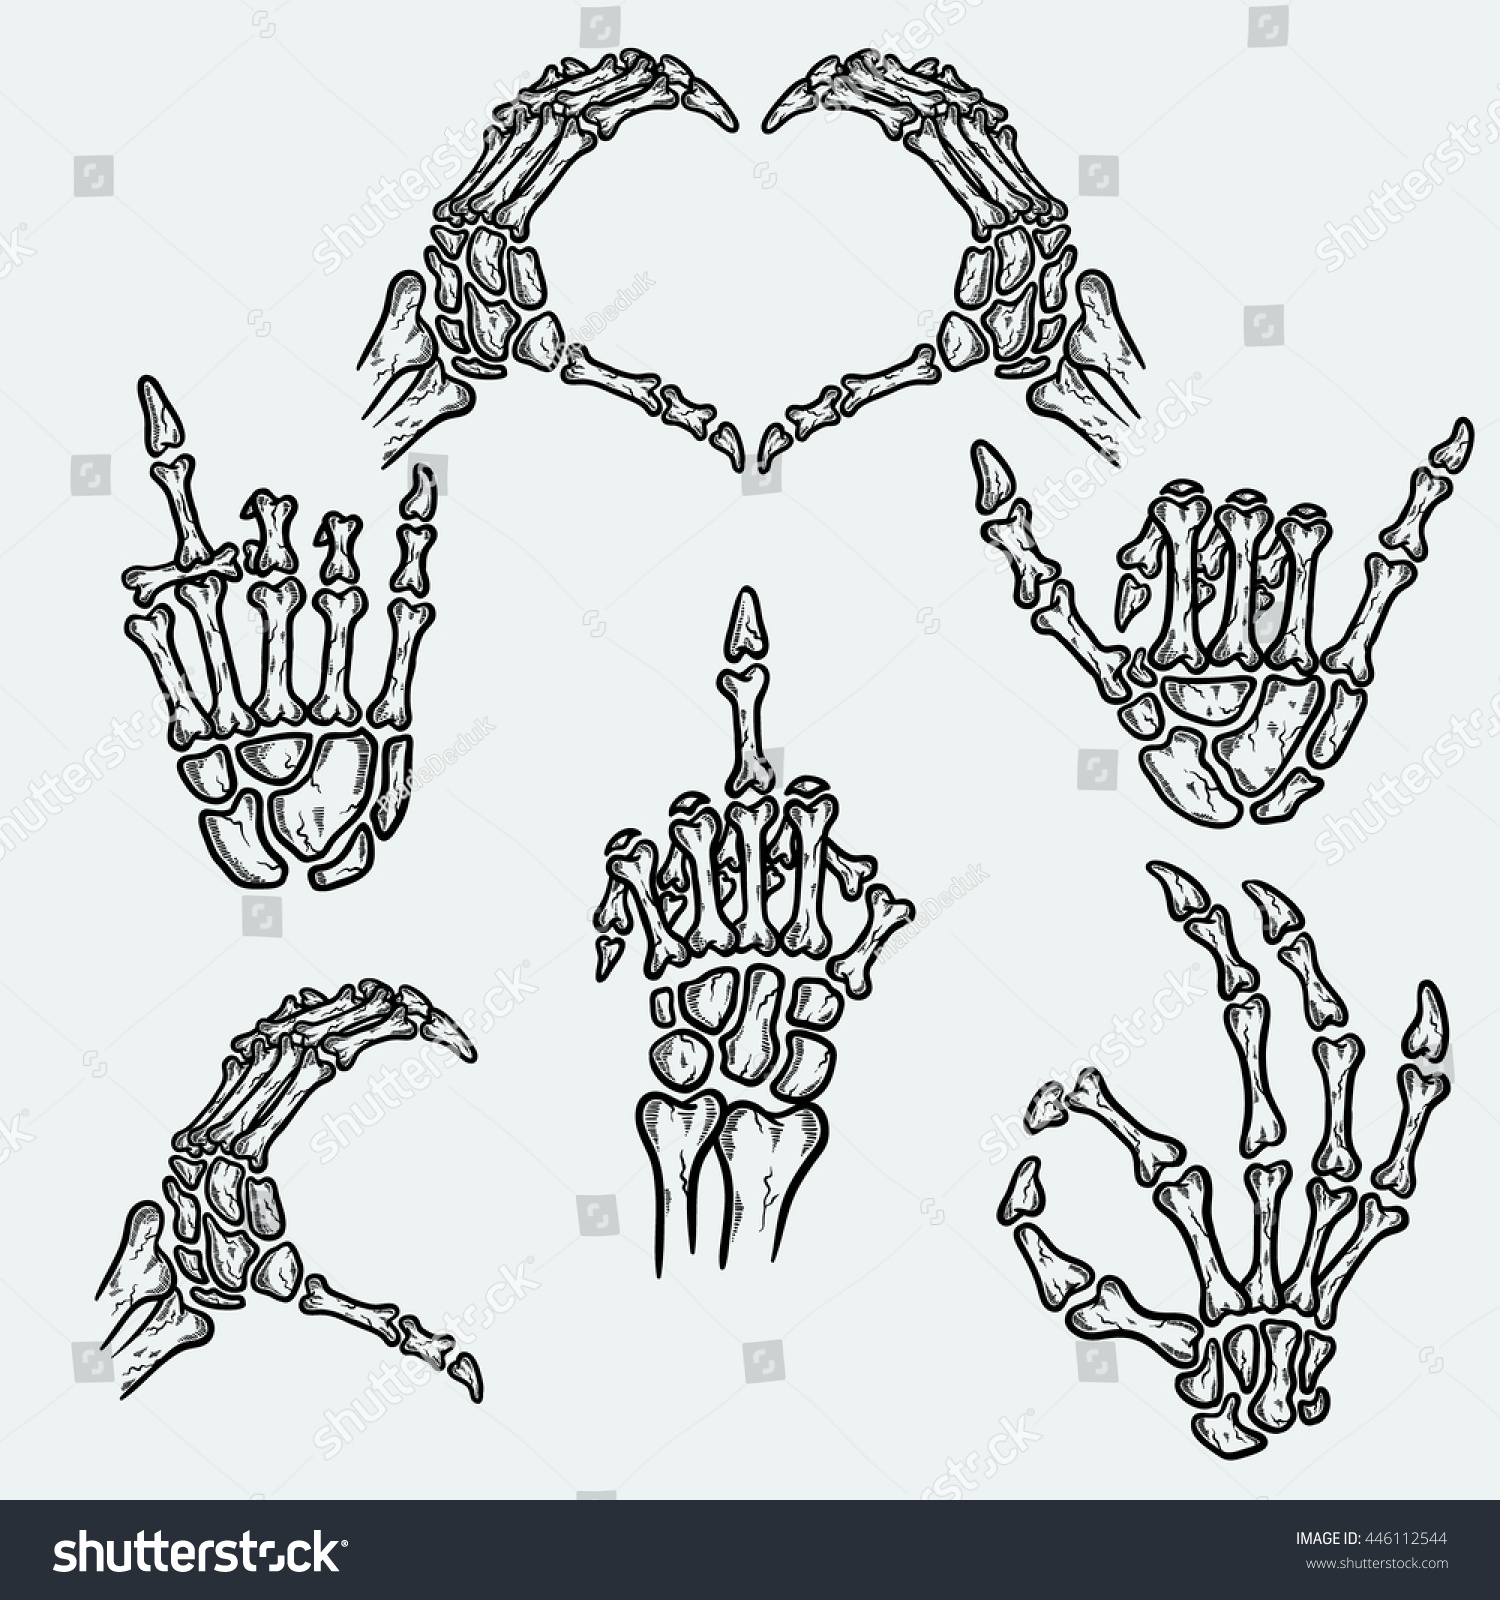 Руки скелета в виде сердца